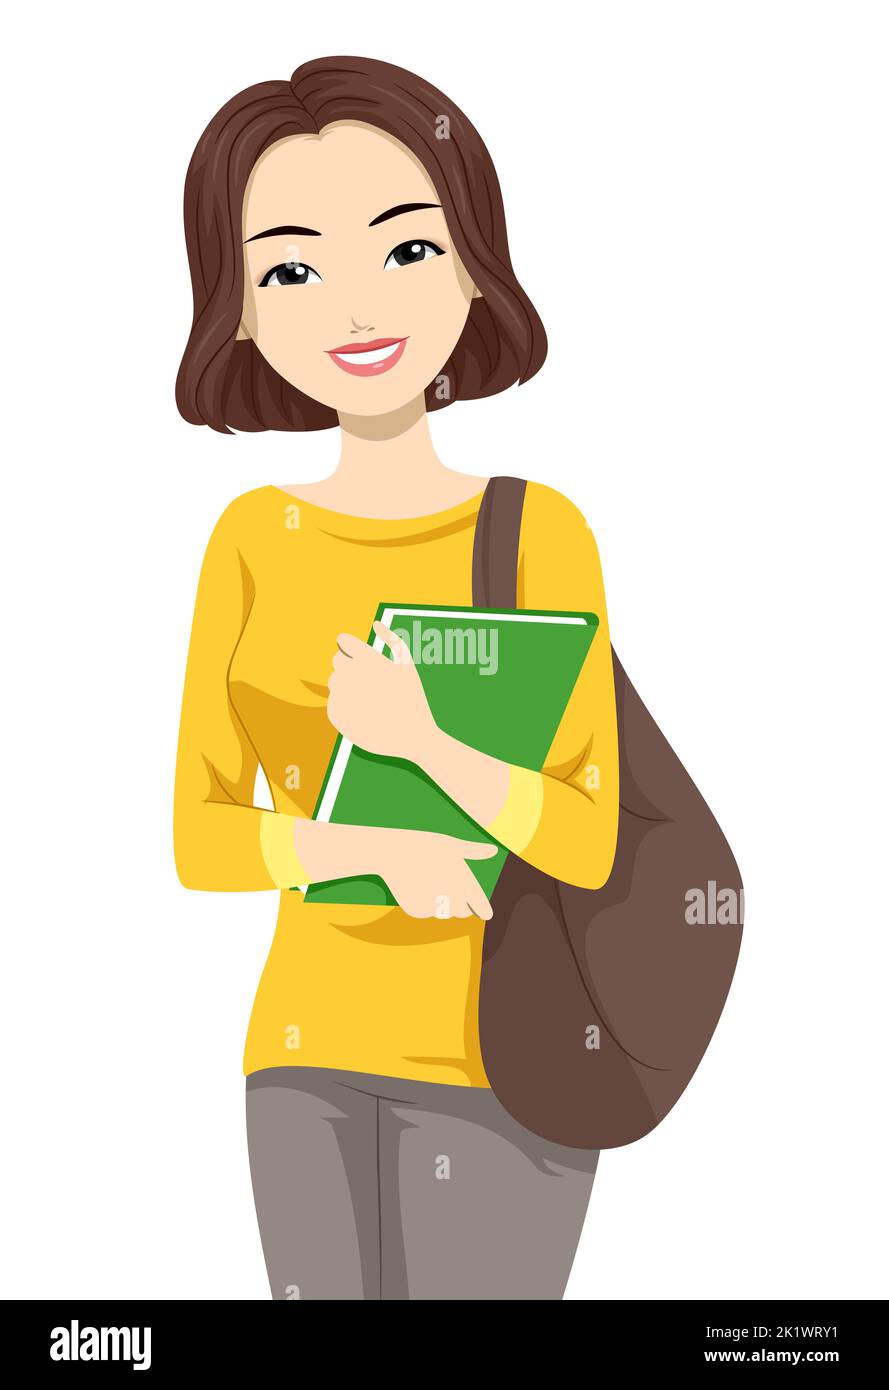 Illustrazione della studentessa asiatica d'adolescente con una borsa per la scuola e un libro Foto Stock